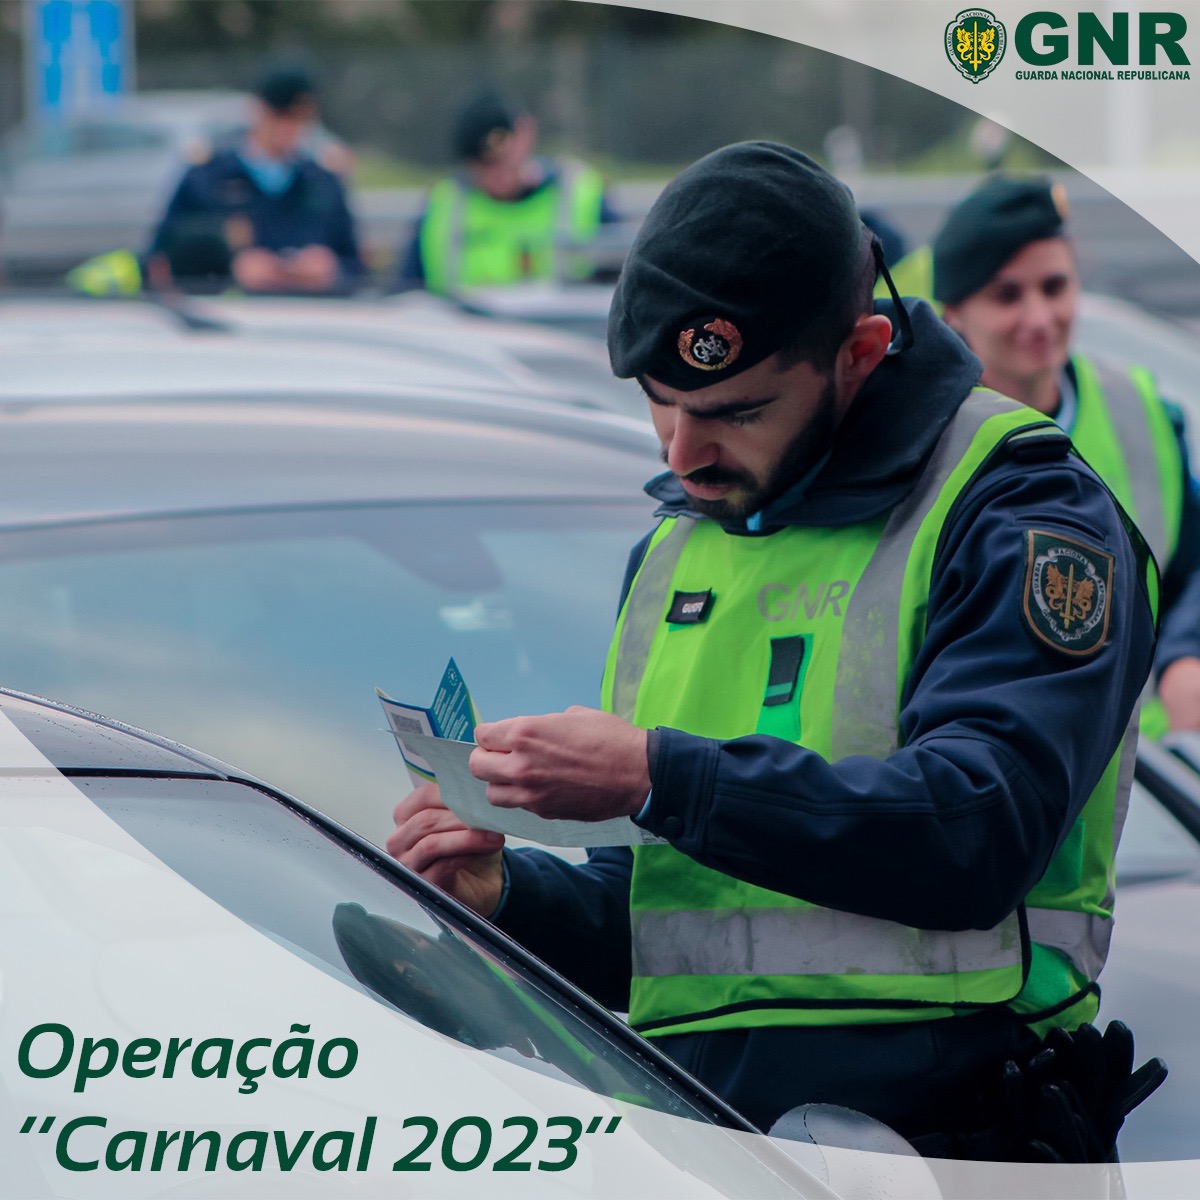 Operação “Carnaval 2023”